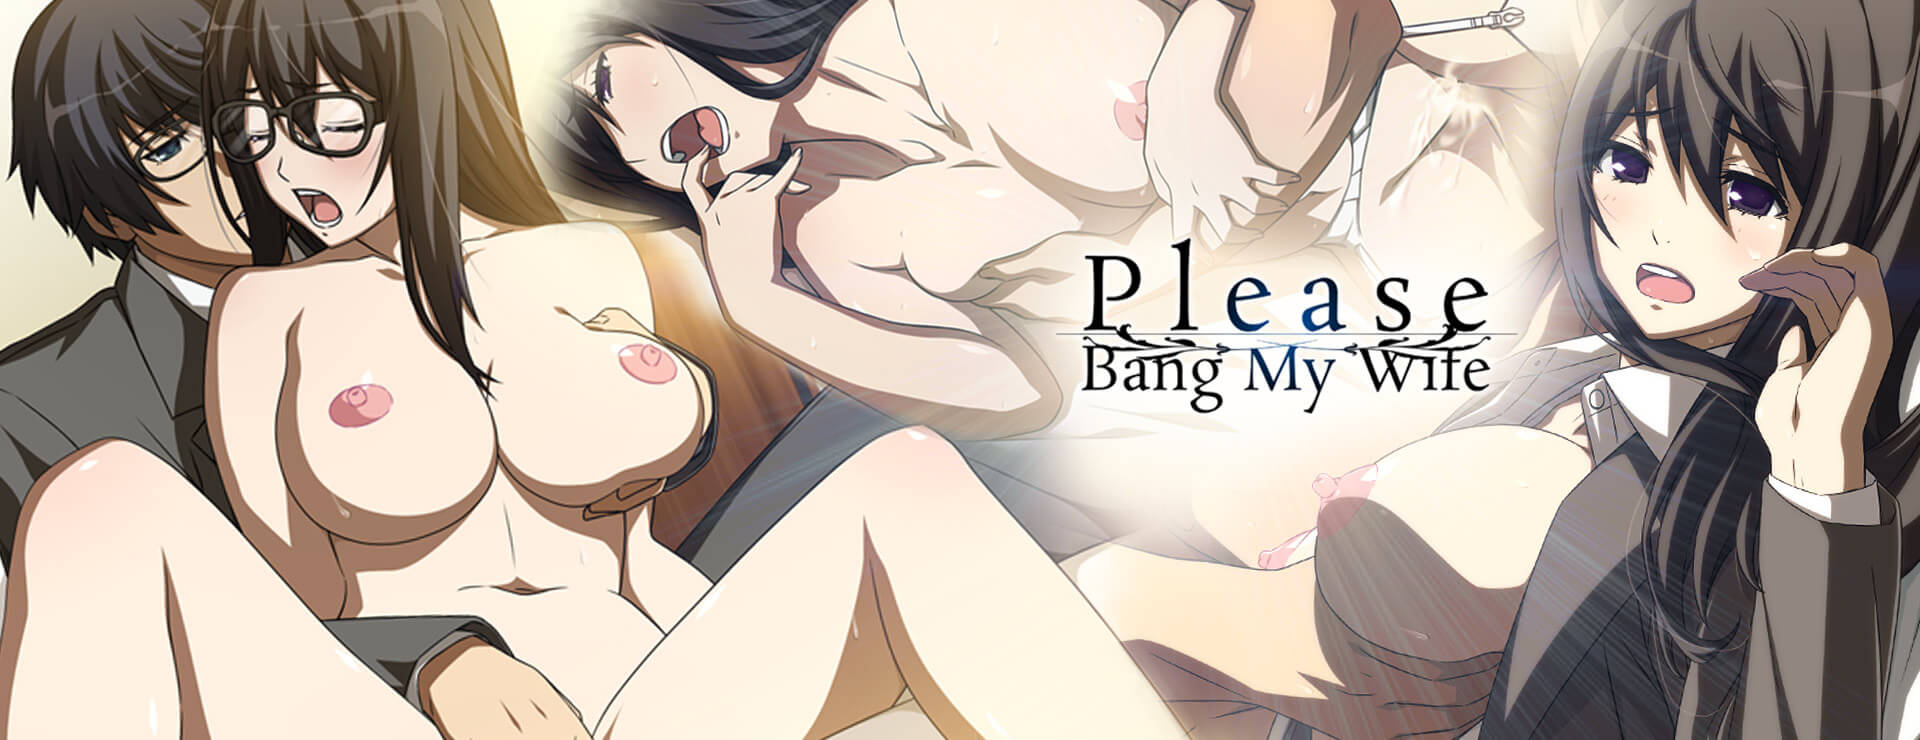 Please Bang My Wife - Novela Visual Juego